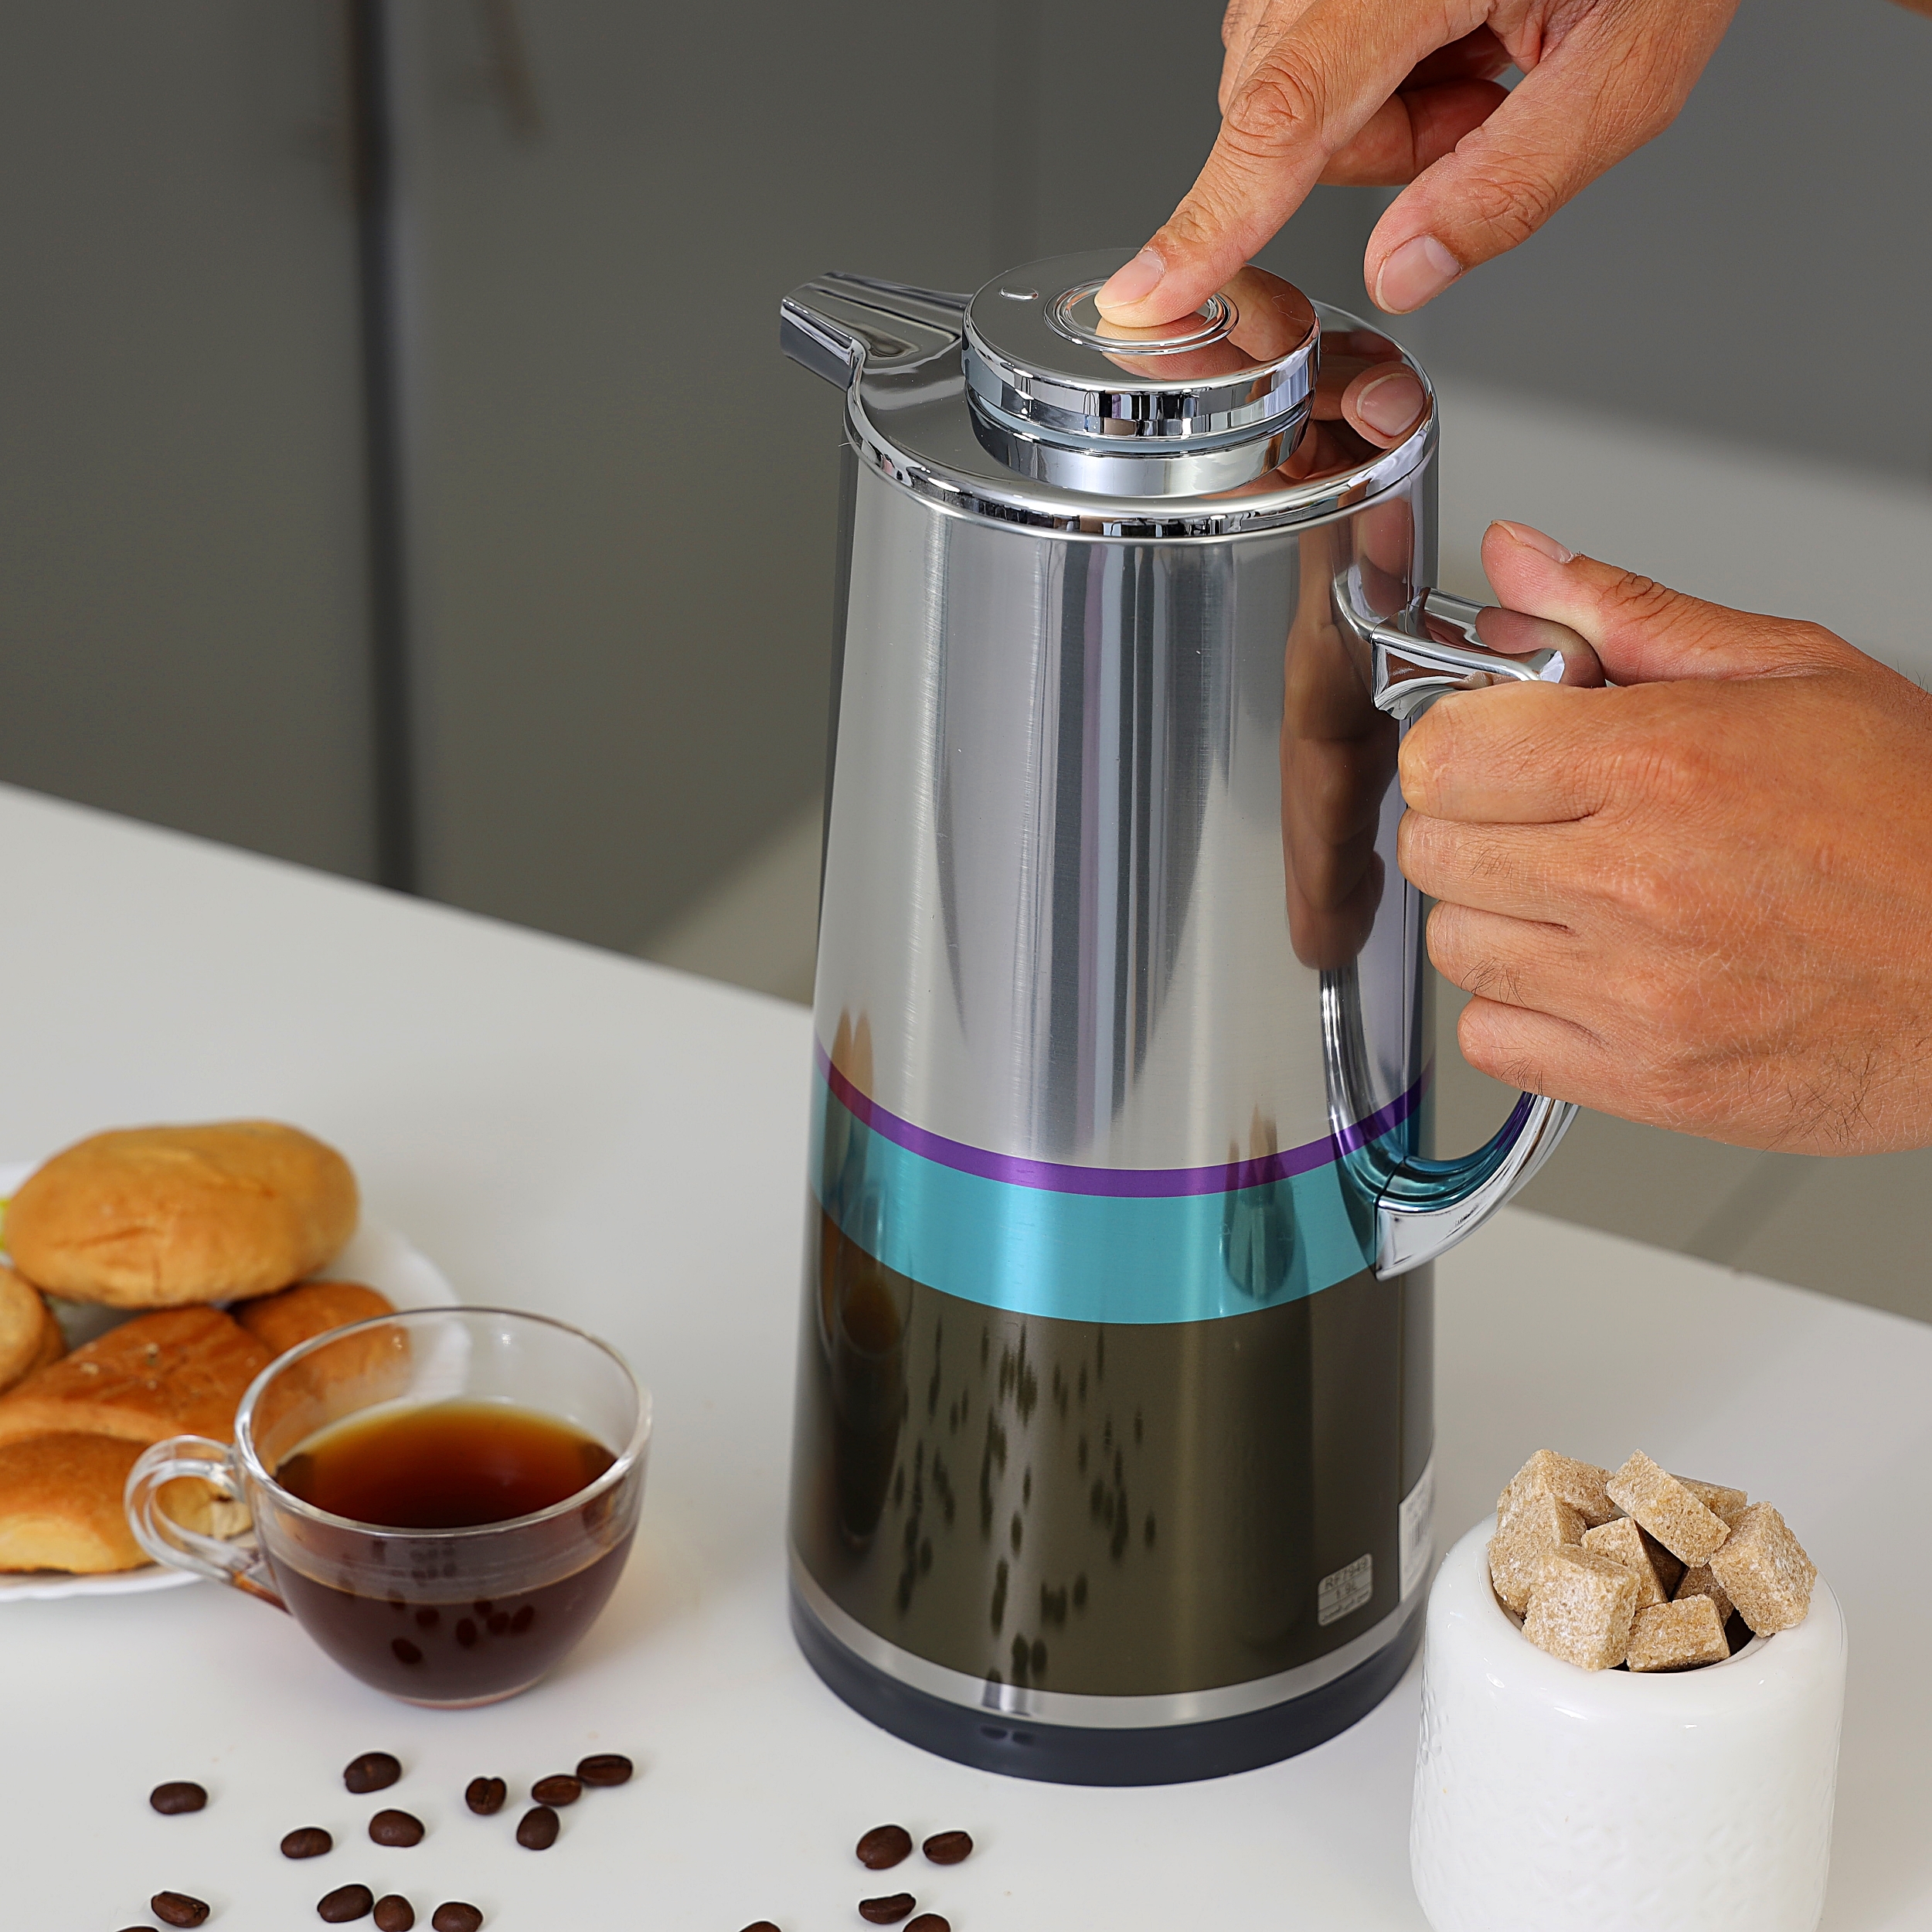 دلة قهوة حافظة للحرارة بسعة 1.6 لتر | Royalford Silver Vacuum Flask